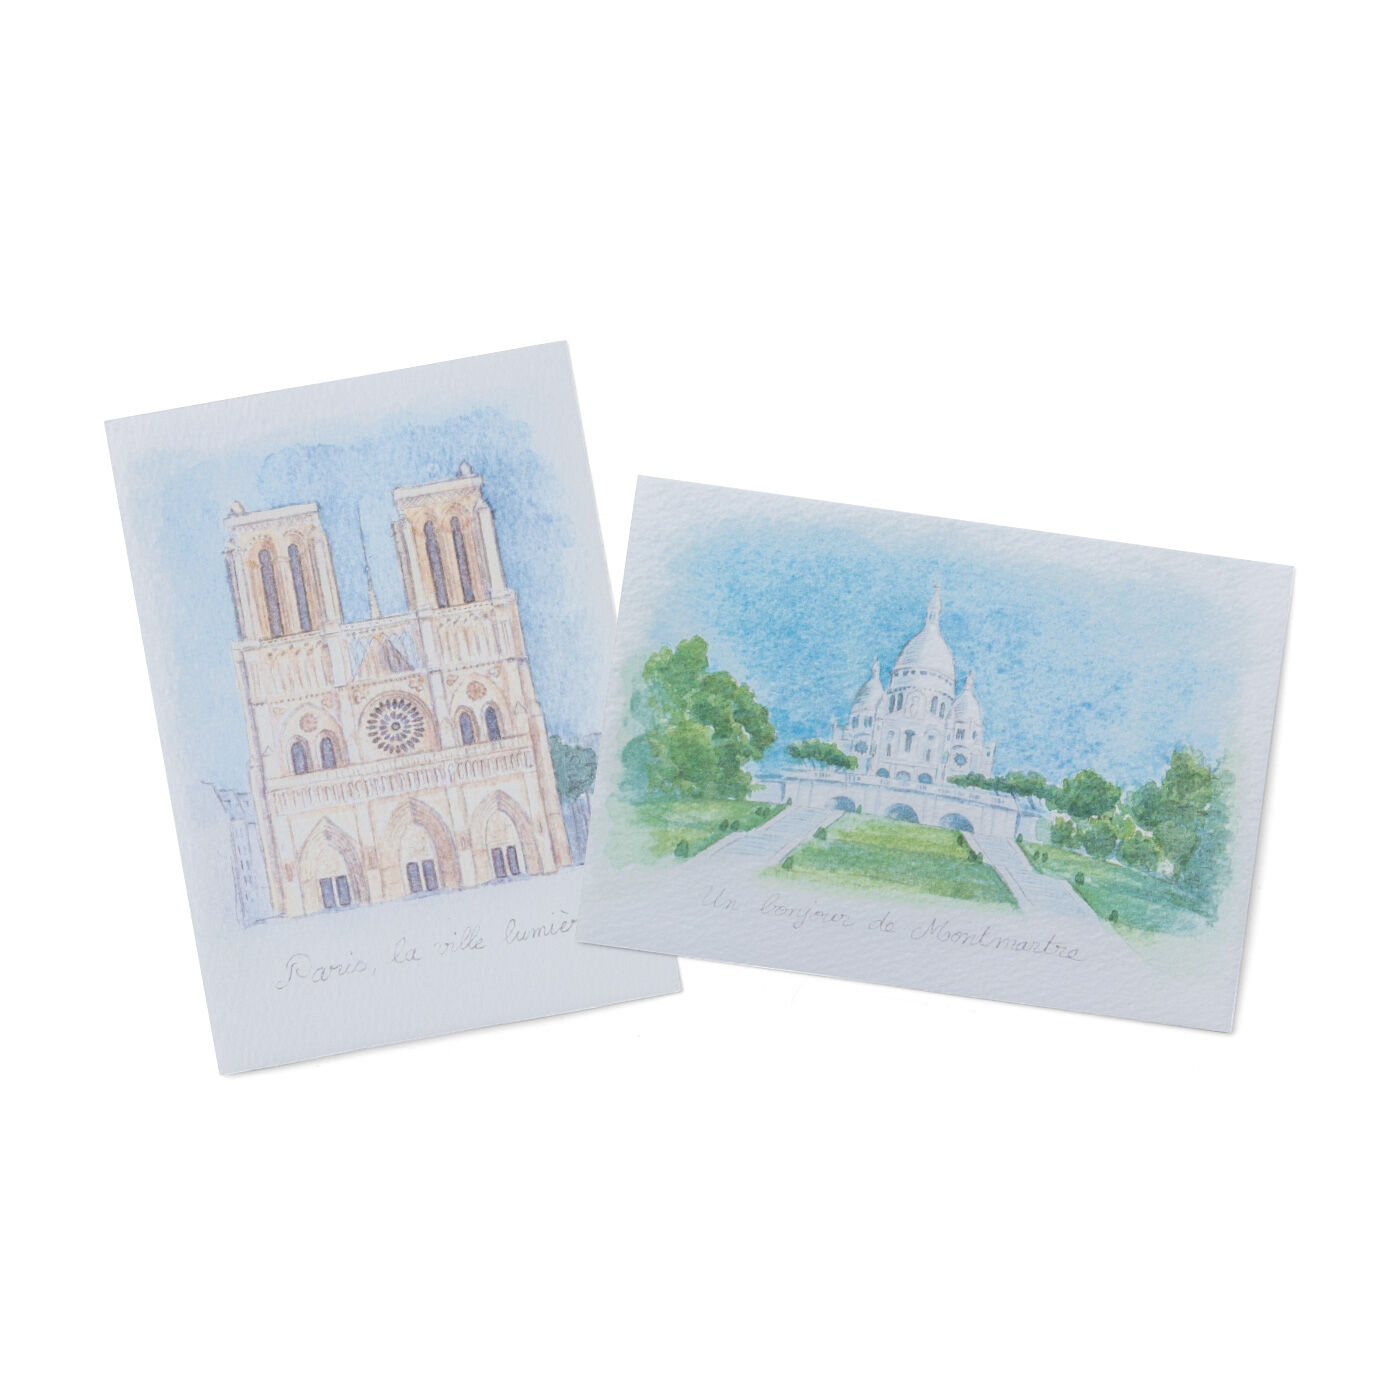 クチュリエ|パリの街並みをモノクロームで描くクロスステッチ|アンヌさんオリジナルイラストのポストカード付き